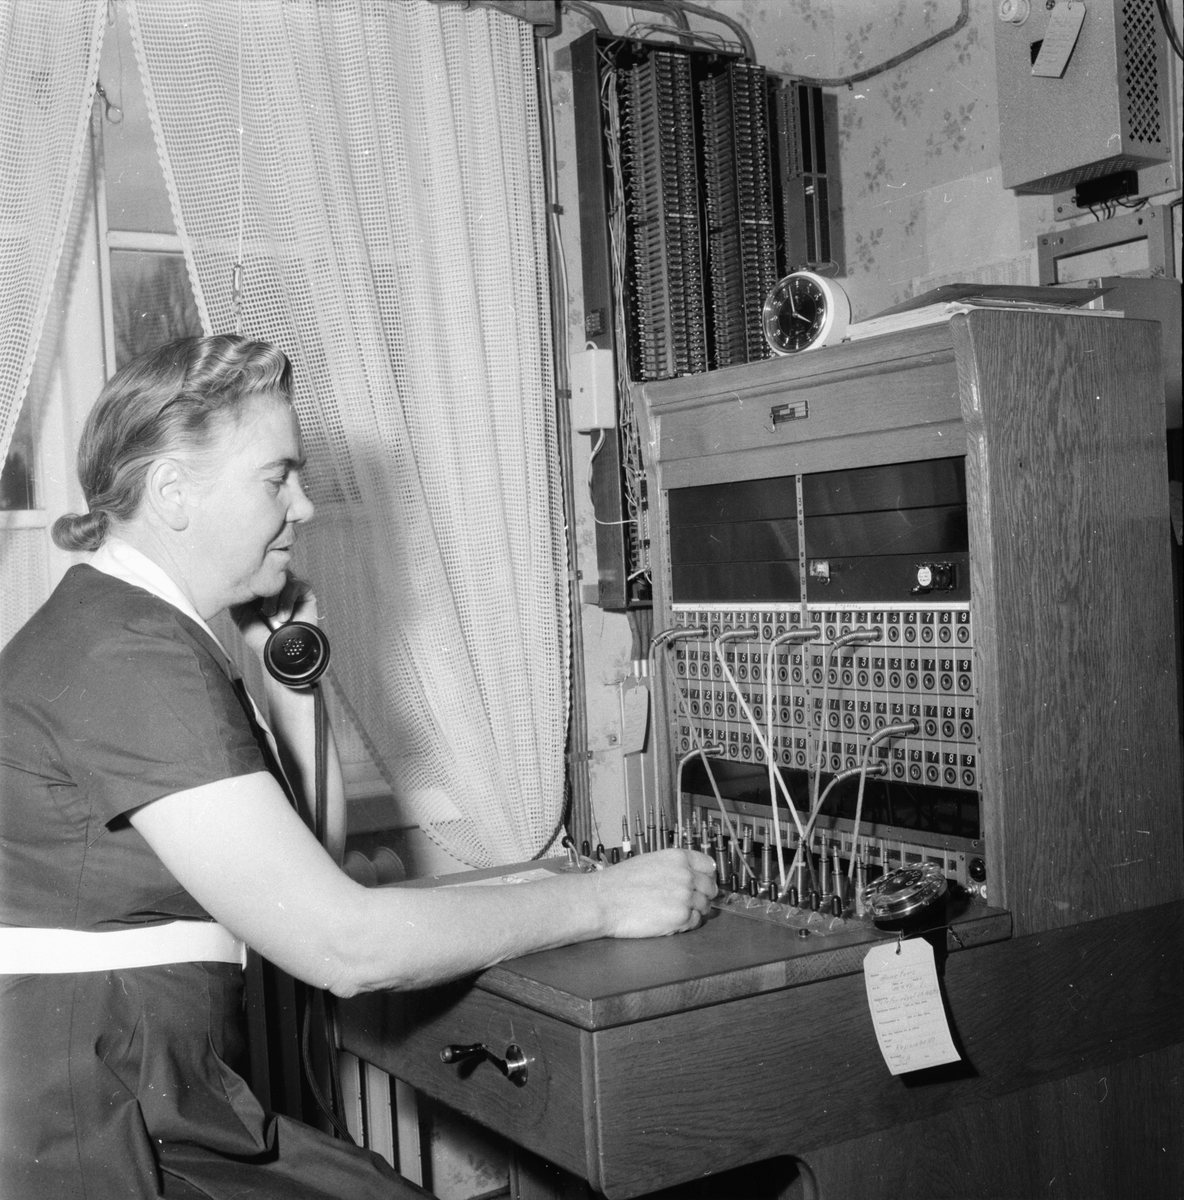 Telefonväxeln i Hällbo flyttar.
23/10 1958